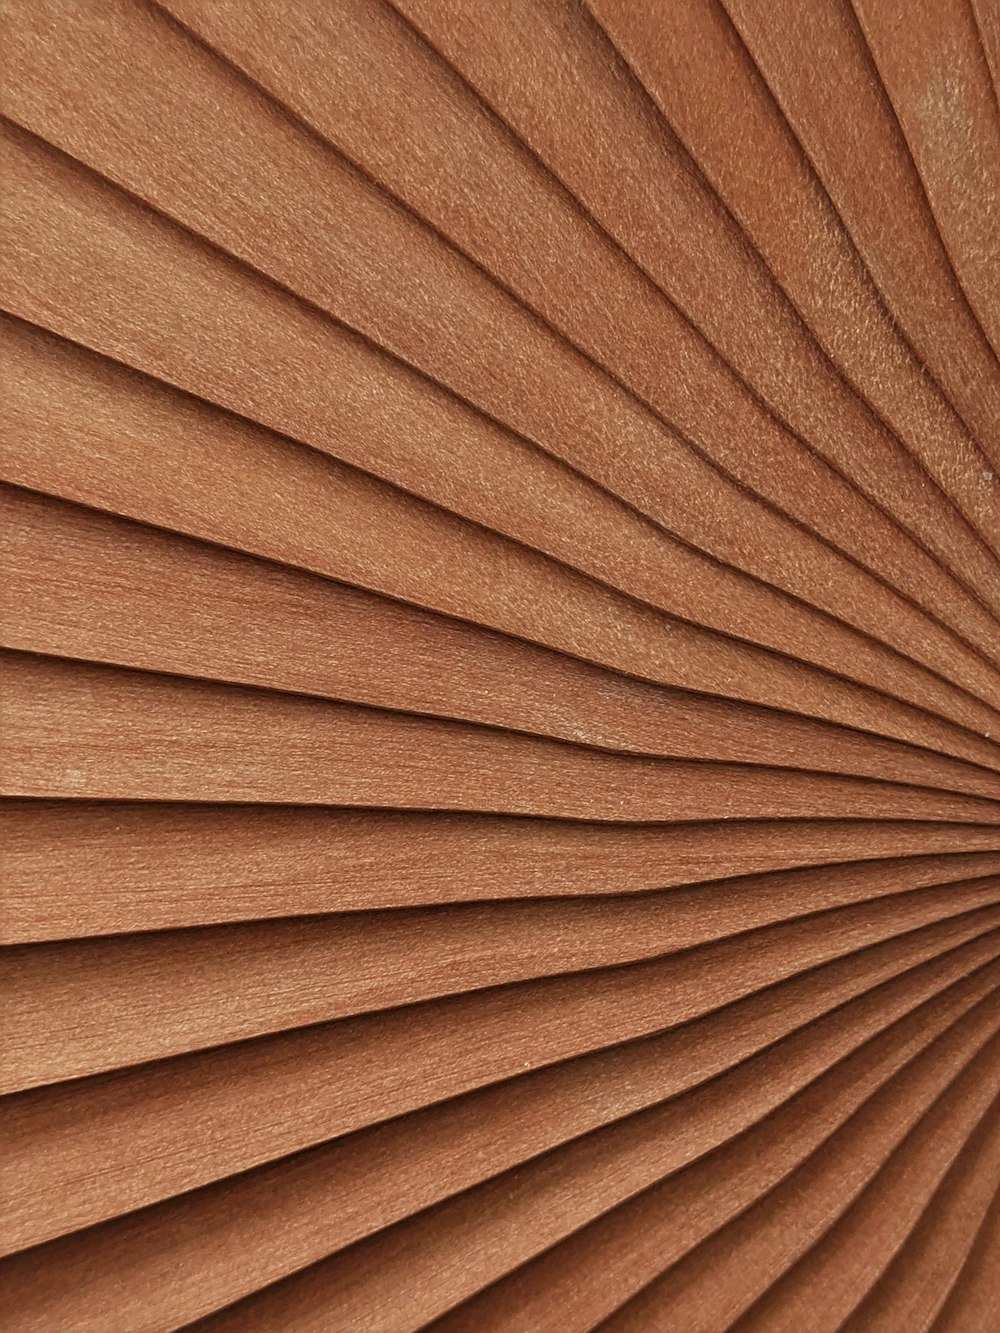 tablero de madera marrón en fotografía de cerca